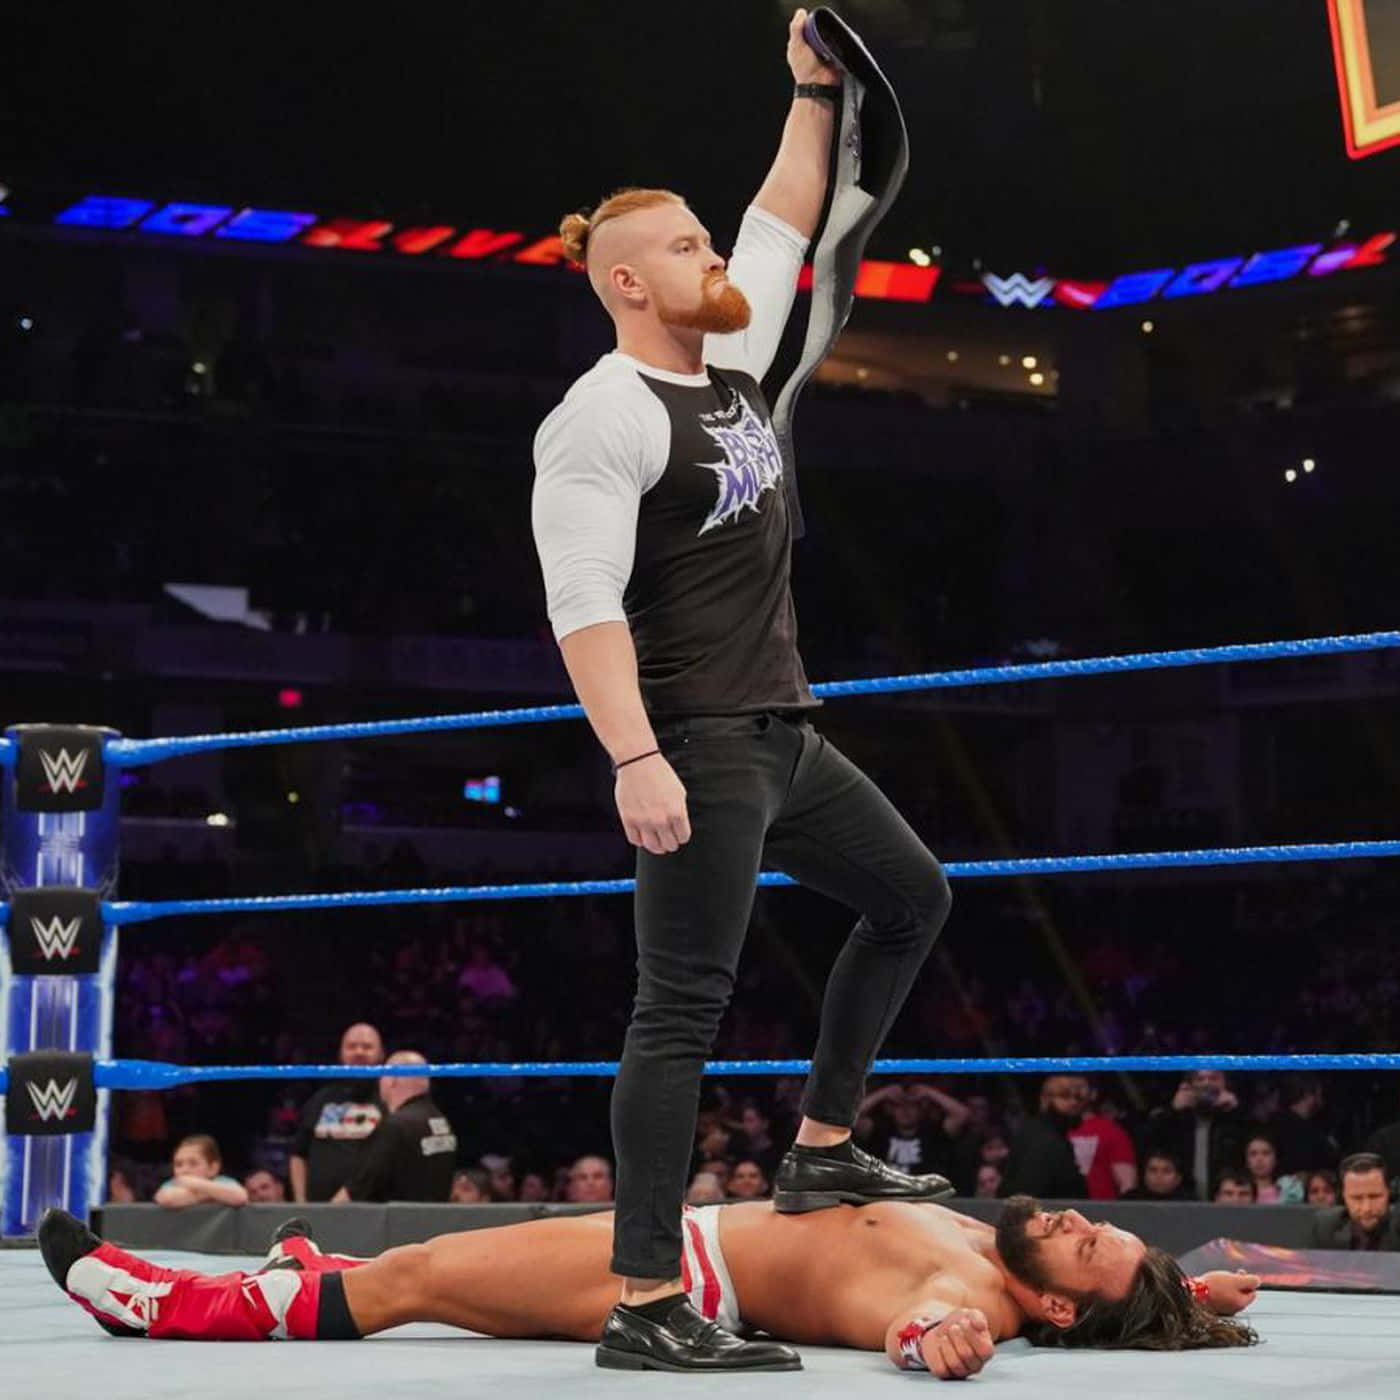 Buddy Murphy mod Tony Nese WWE 205 Live - Hold øje med et overraskende showdown! Wallpaper